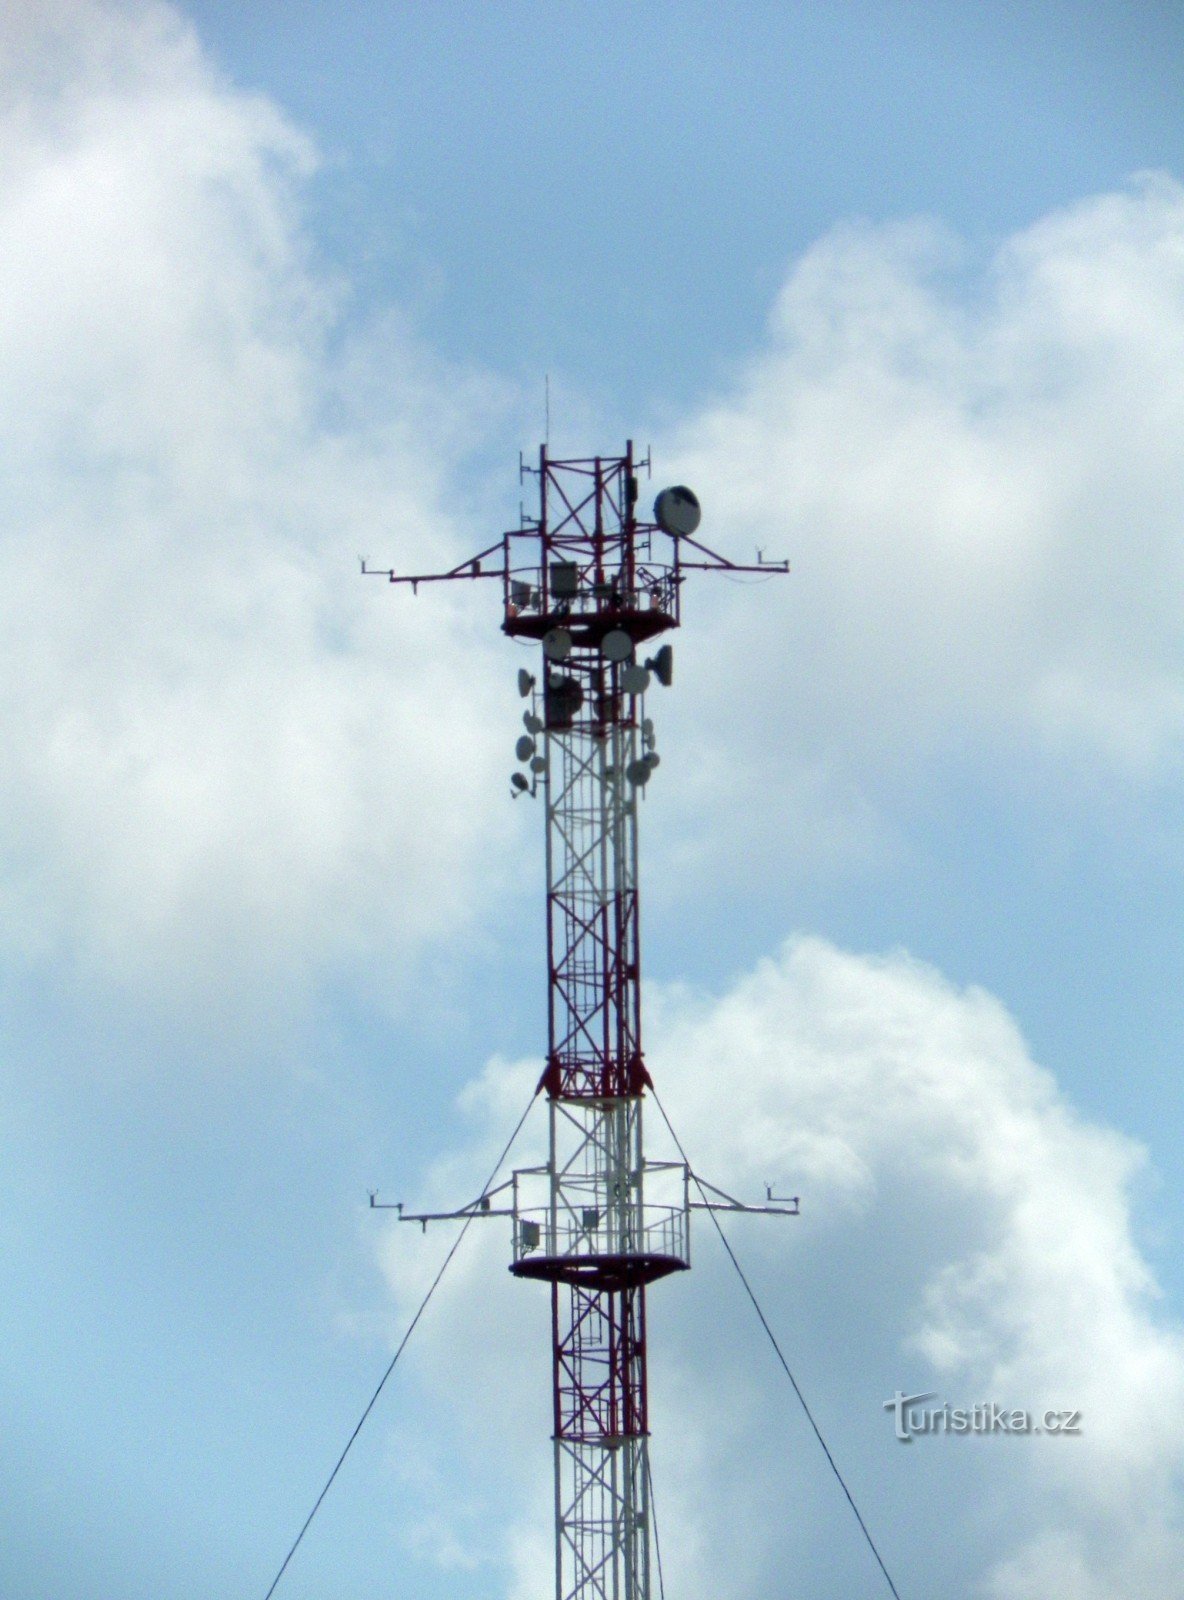 Particolare della sommità dell'albero con una web camera, meteometri e antenne per telecomunicazioni